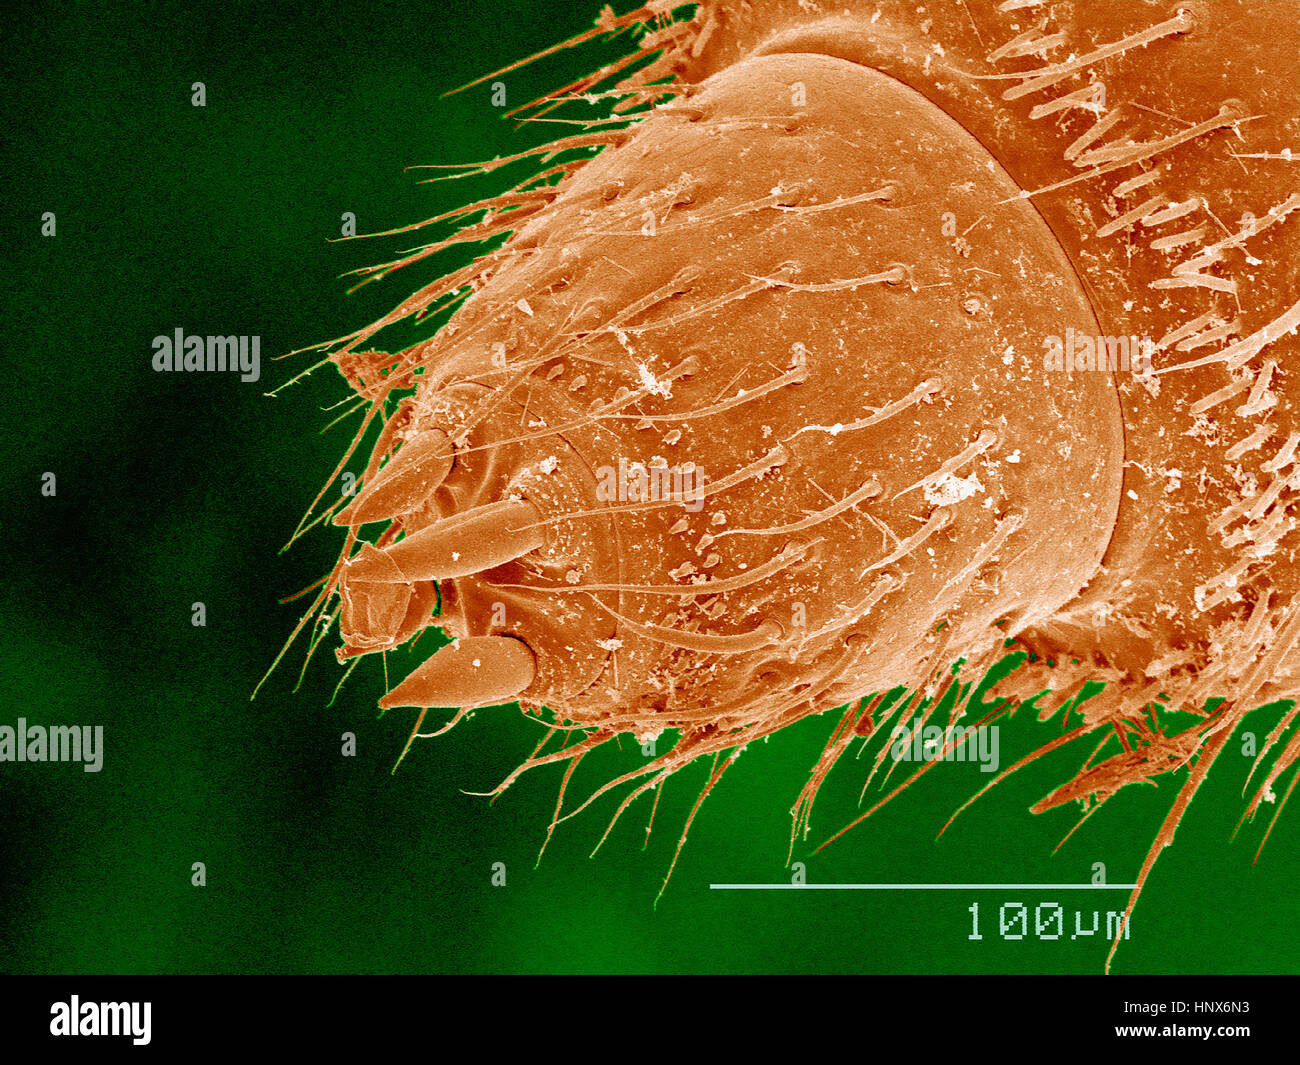 Scanning Electron Schliffbild von einem männlichen Tausendfüßler (Diplopodenrasse) Stockfoto